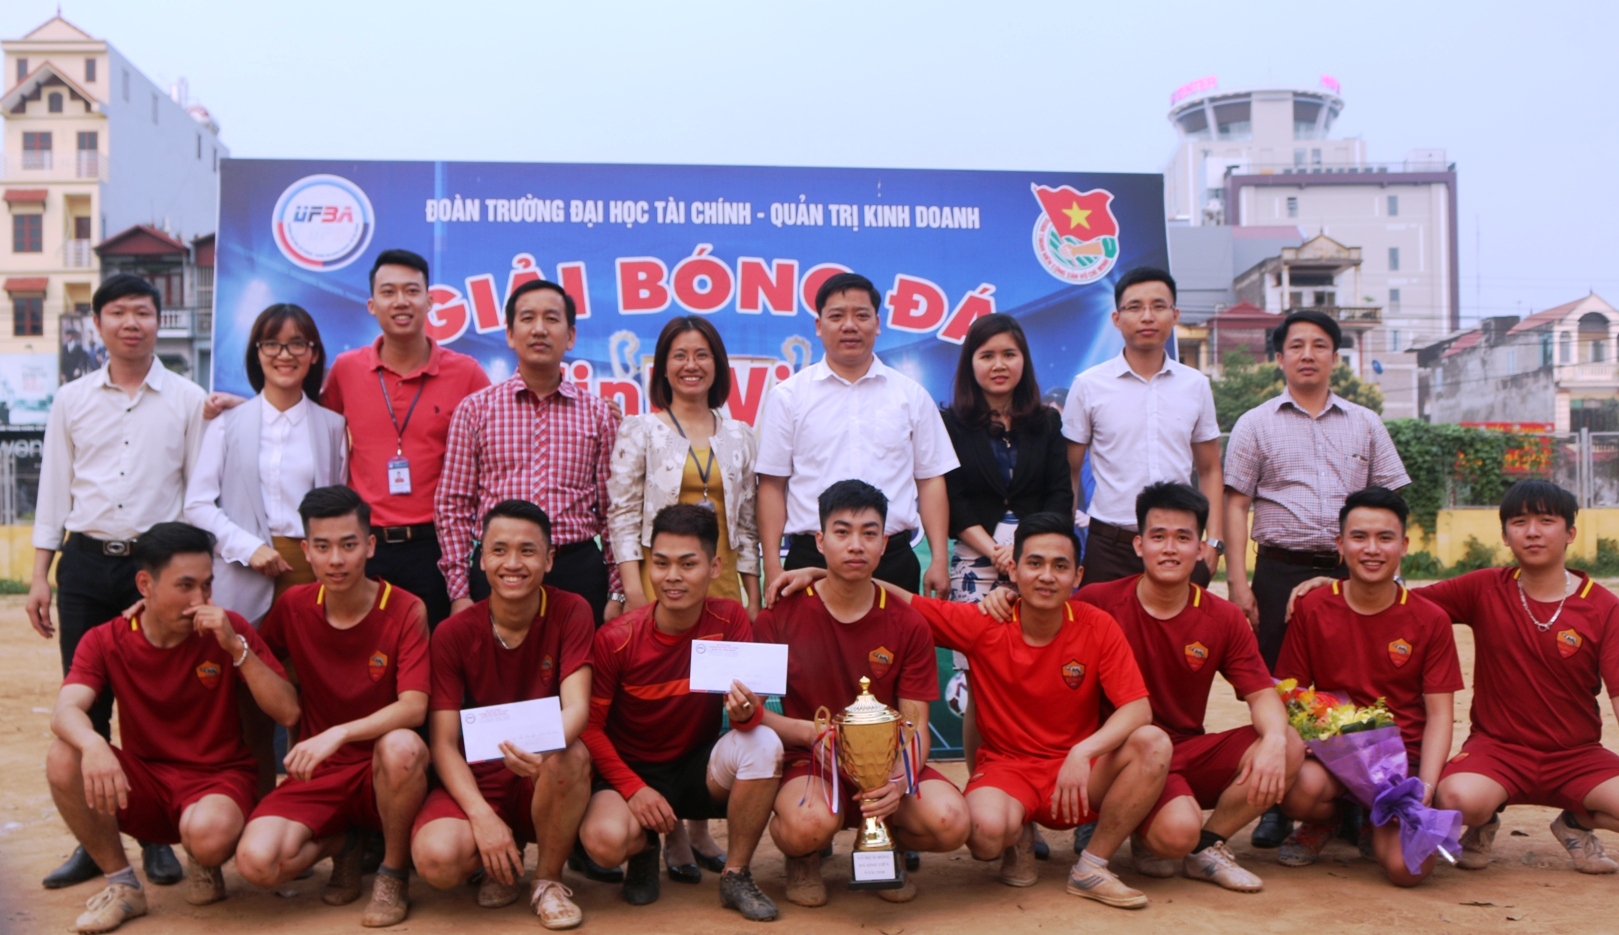 Chung kết và Lễ trao giải bóng đá sinh viên năm 2018